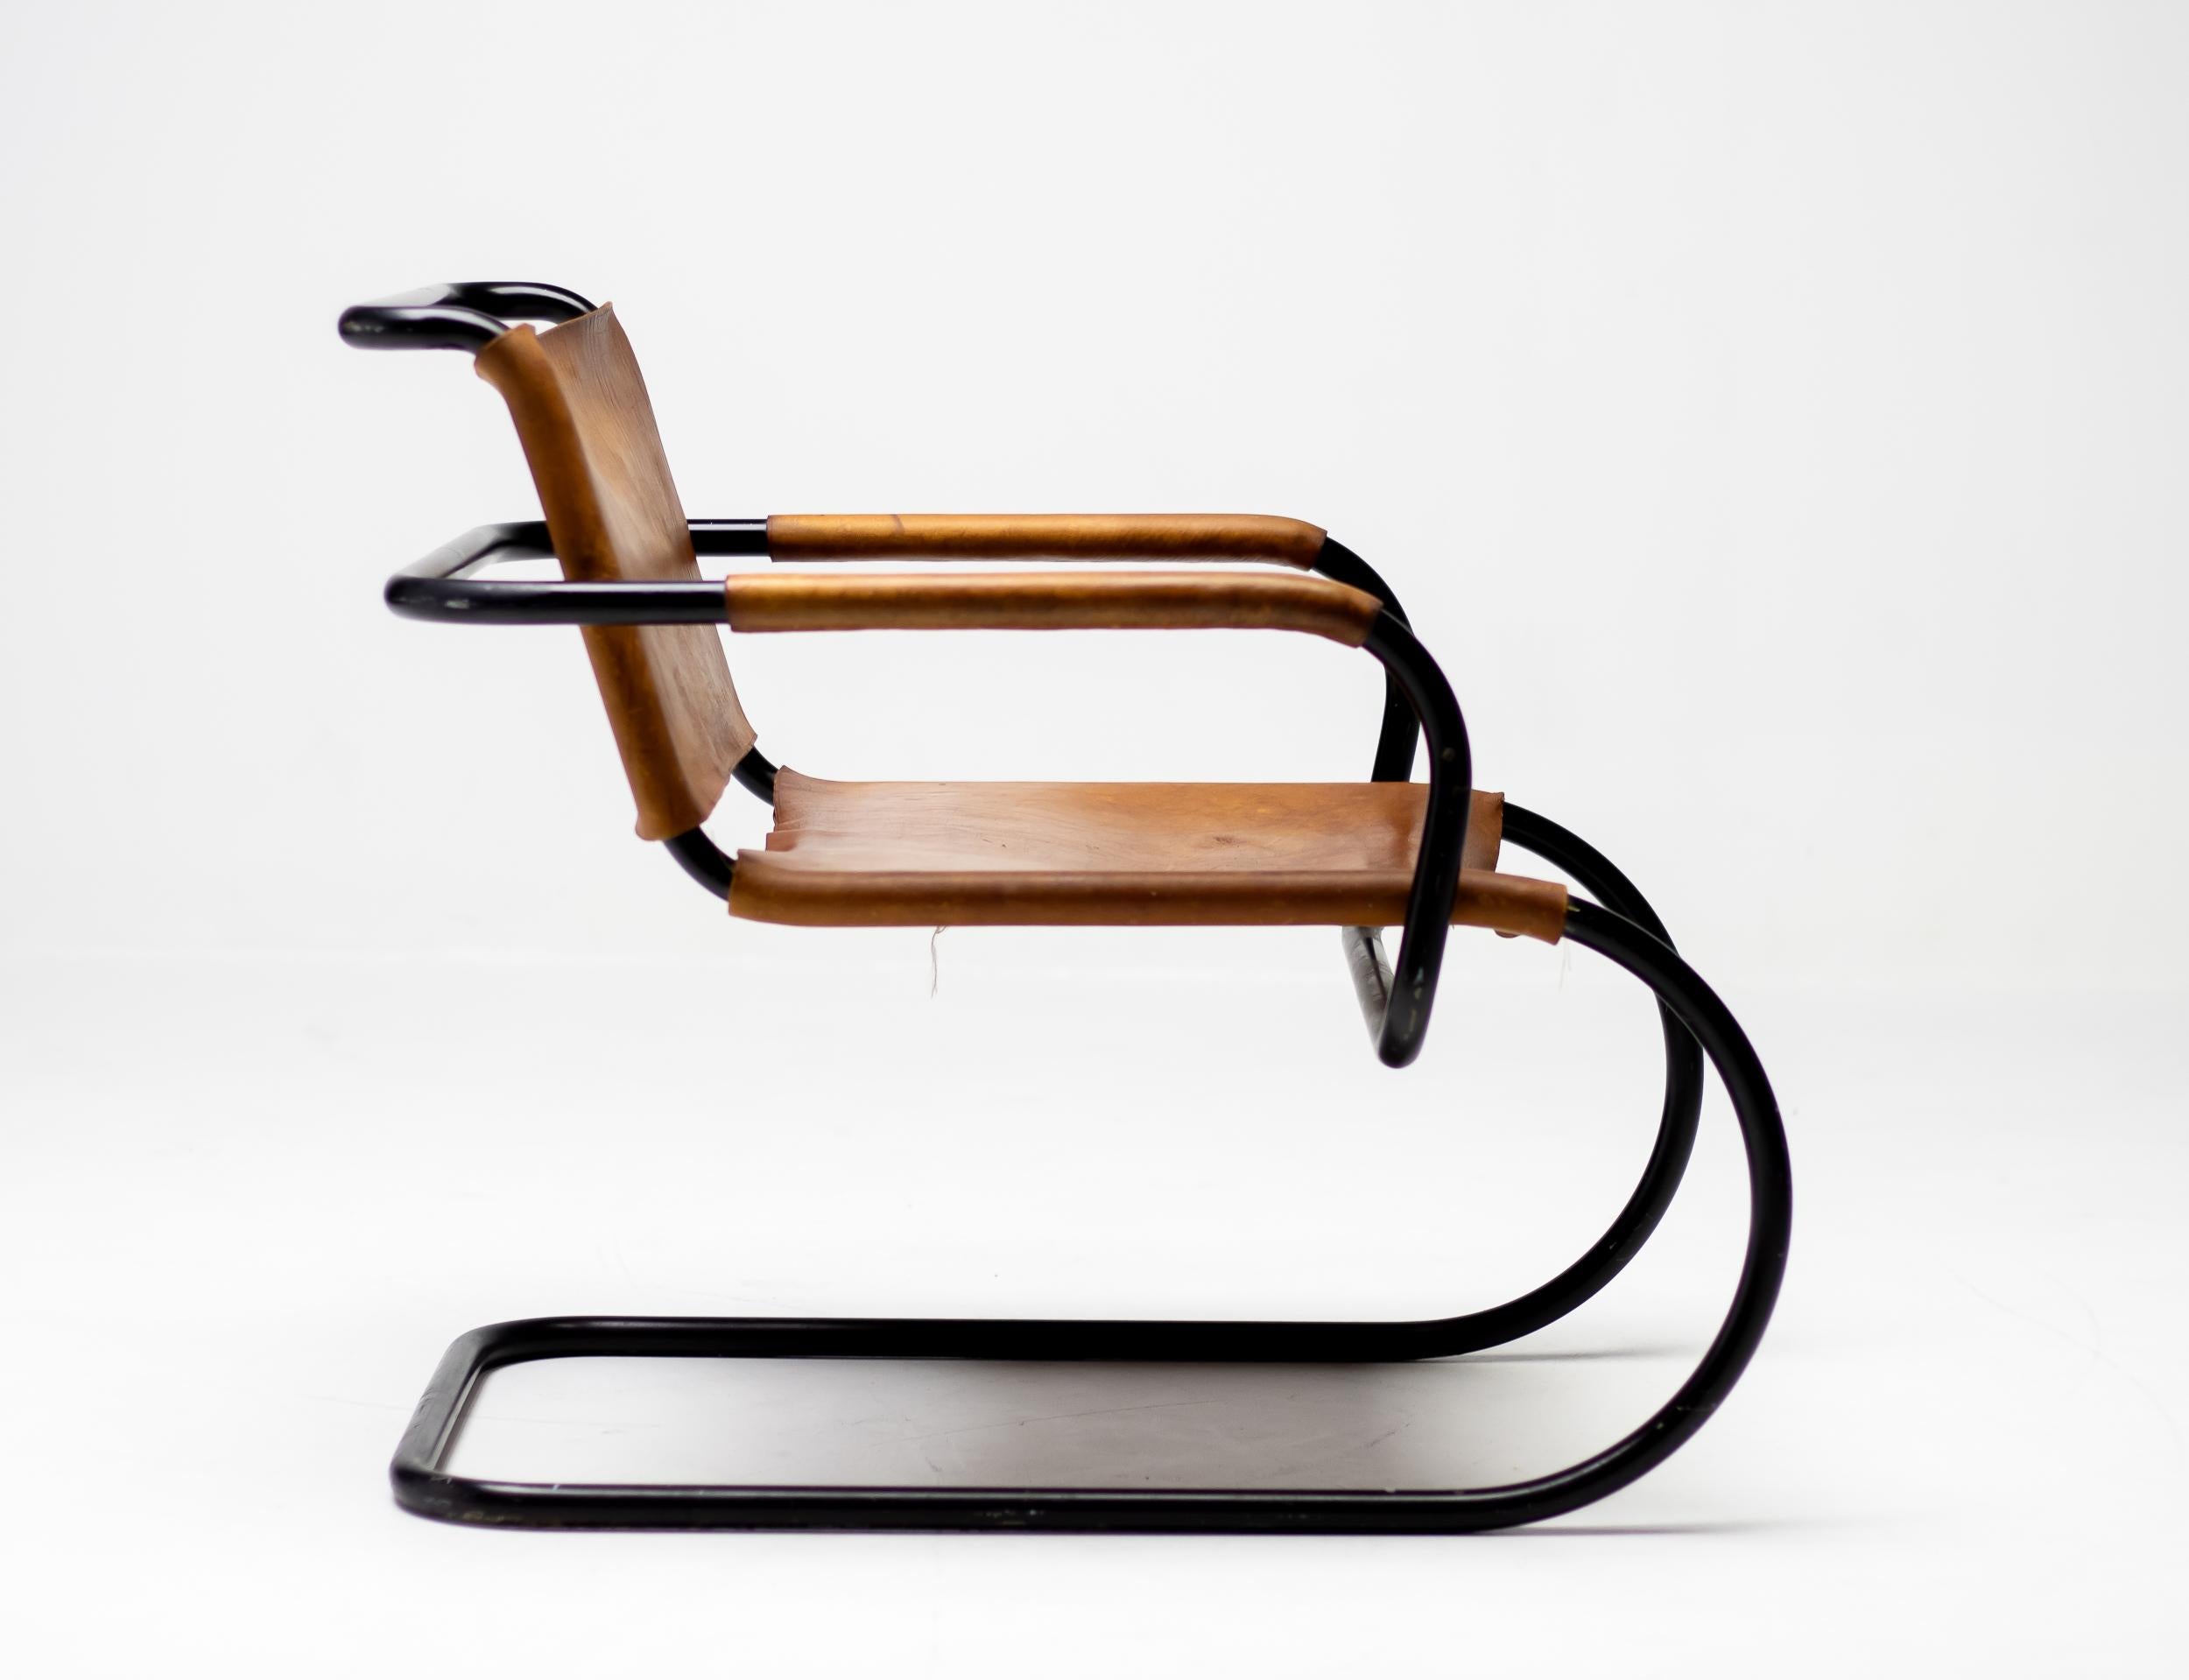 Chaise longue tubulaire conçue par Franco Albini pour la Triennale de Milan en 1933.
Le cadre original émaillé de noir souligne les qualités graphiques de ce dessin.
Le siège et le dossier en cuir naturel sont encore en bon état, parfaitement